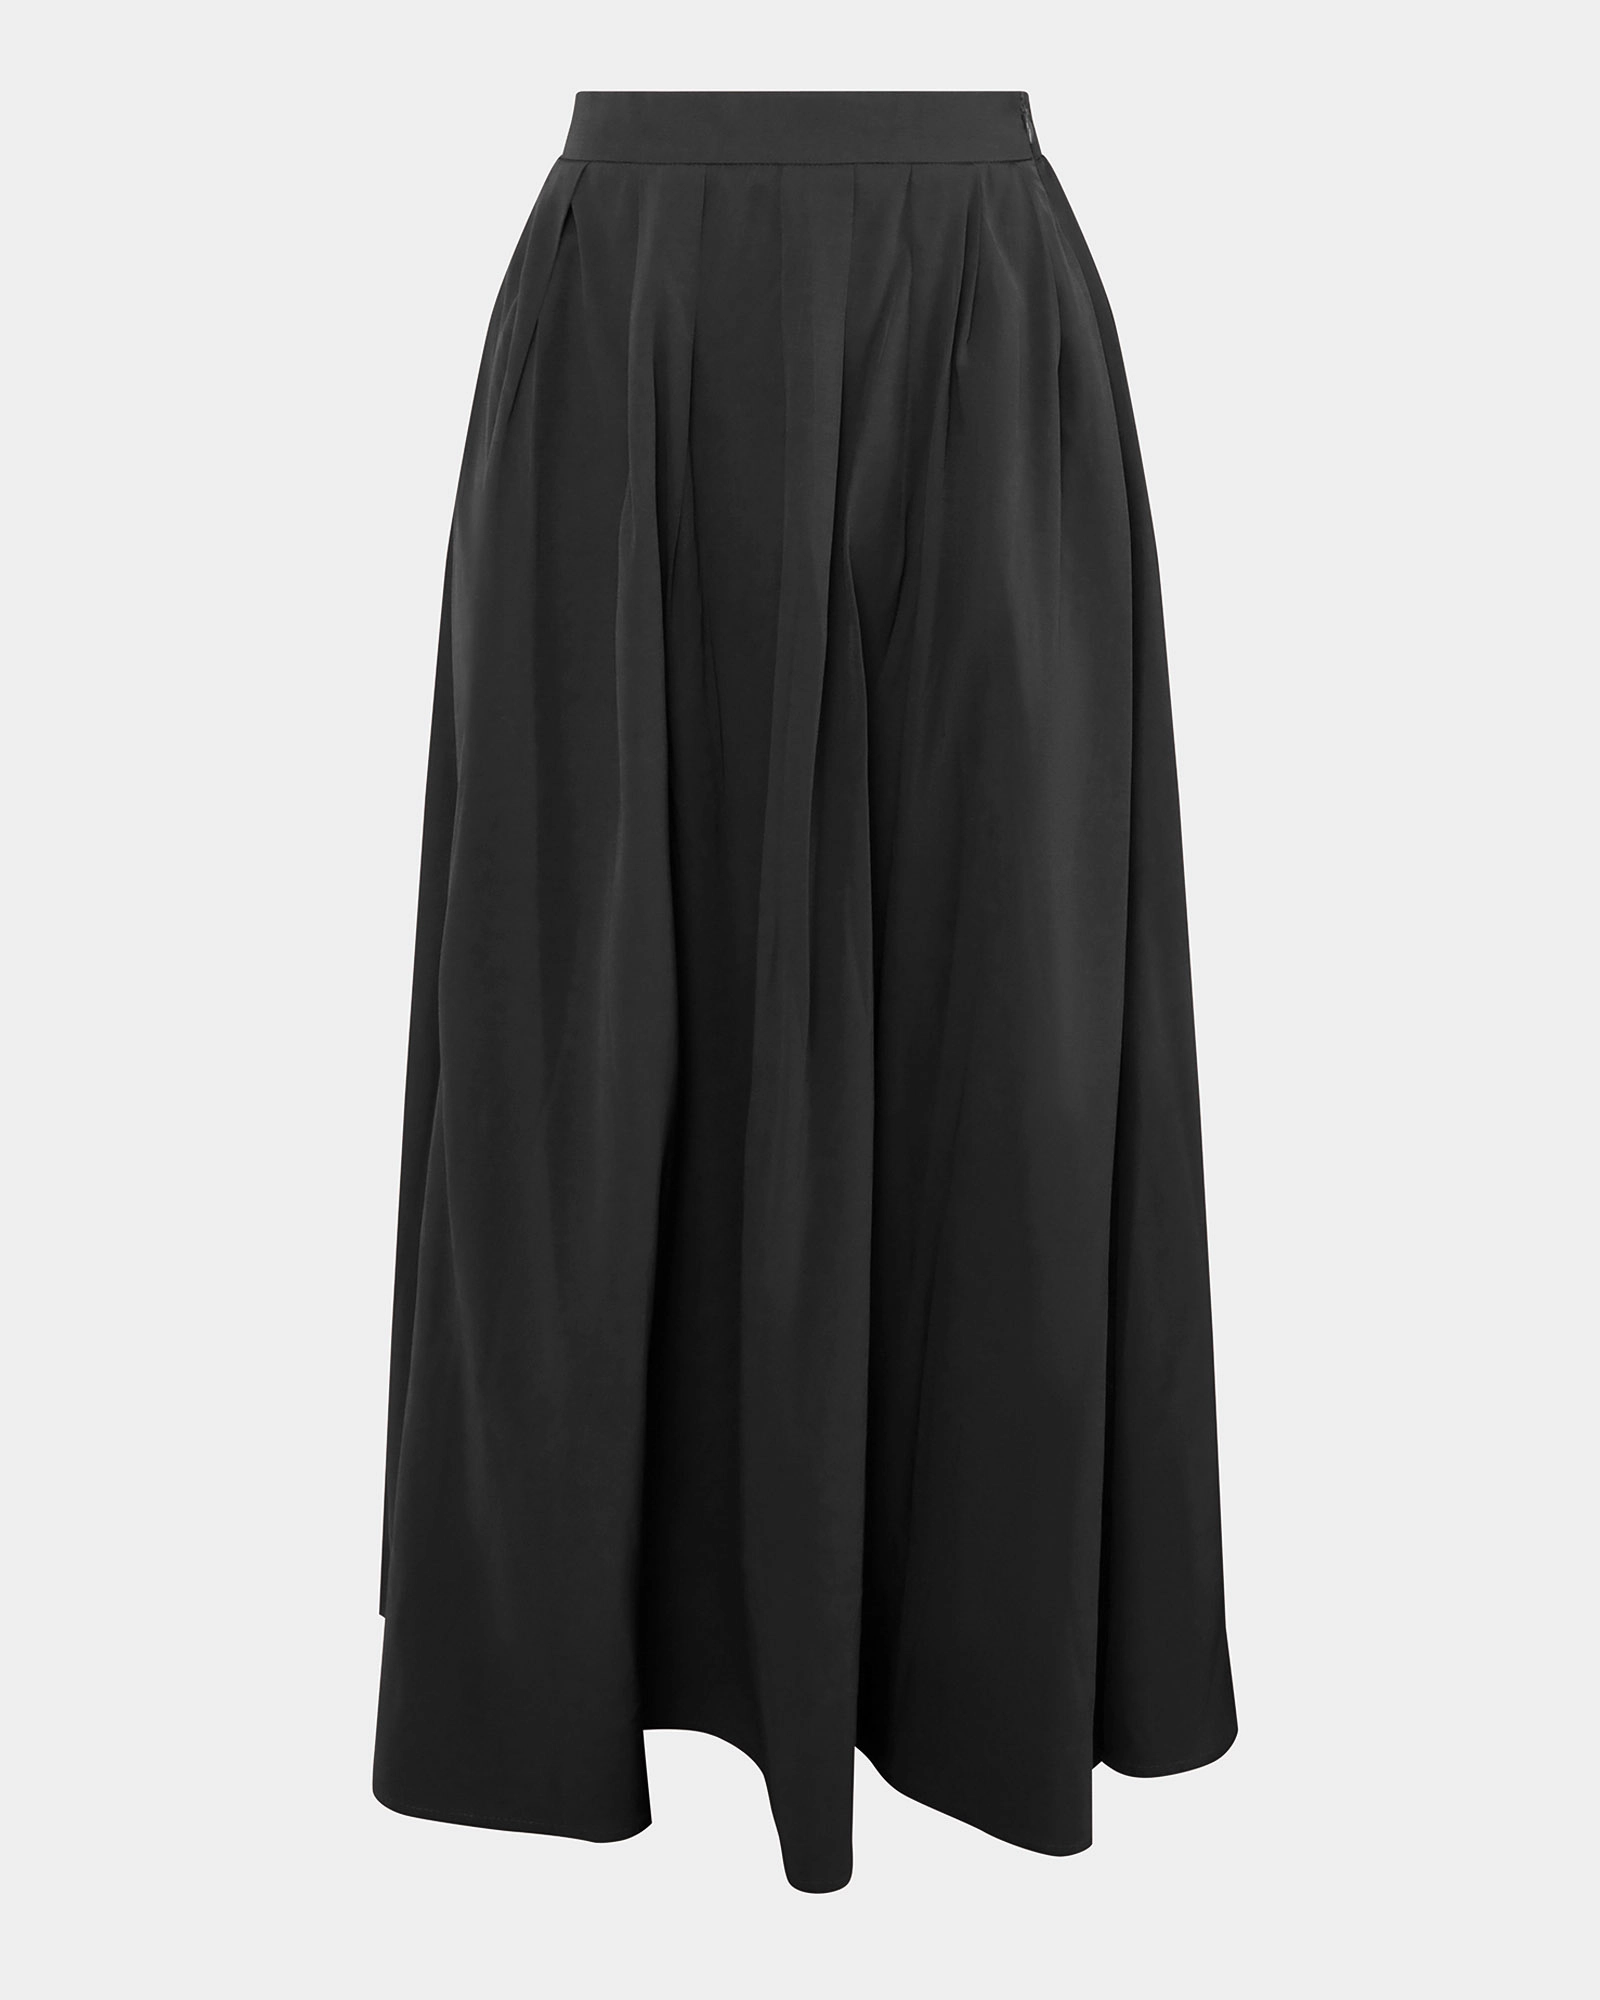 Annalia Pleated Skirt